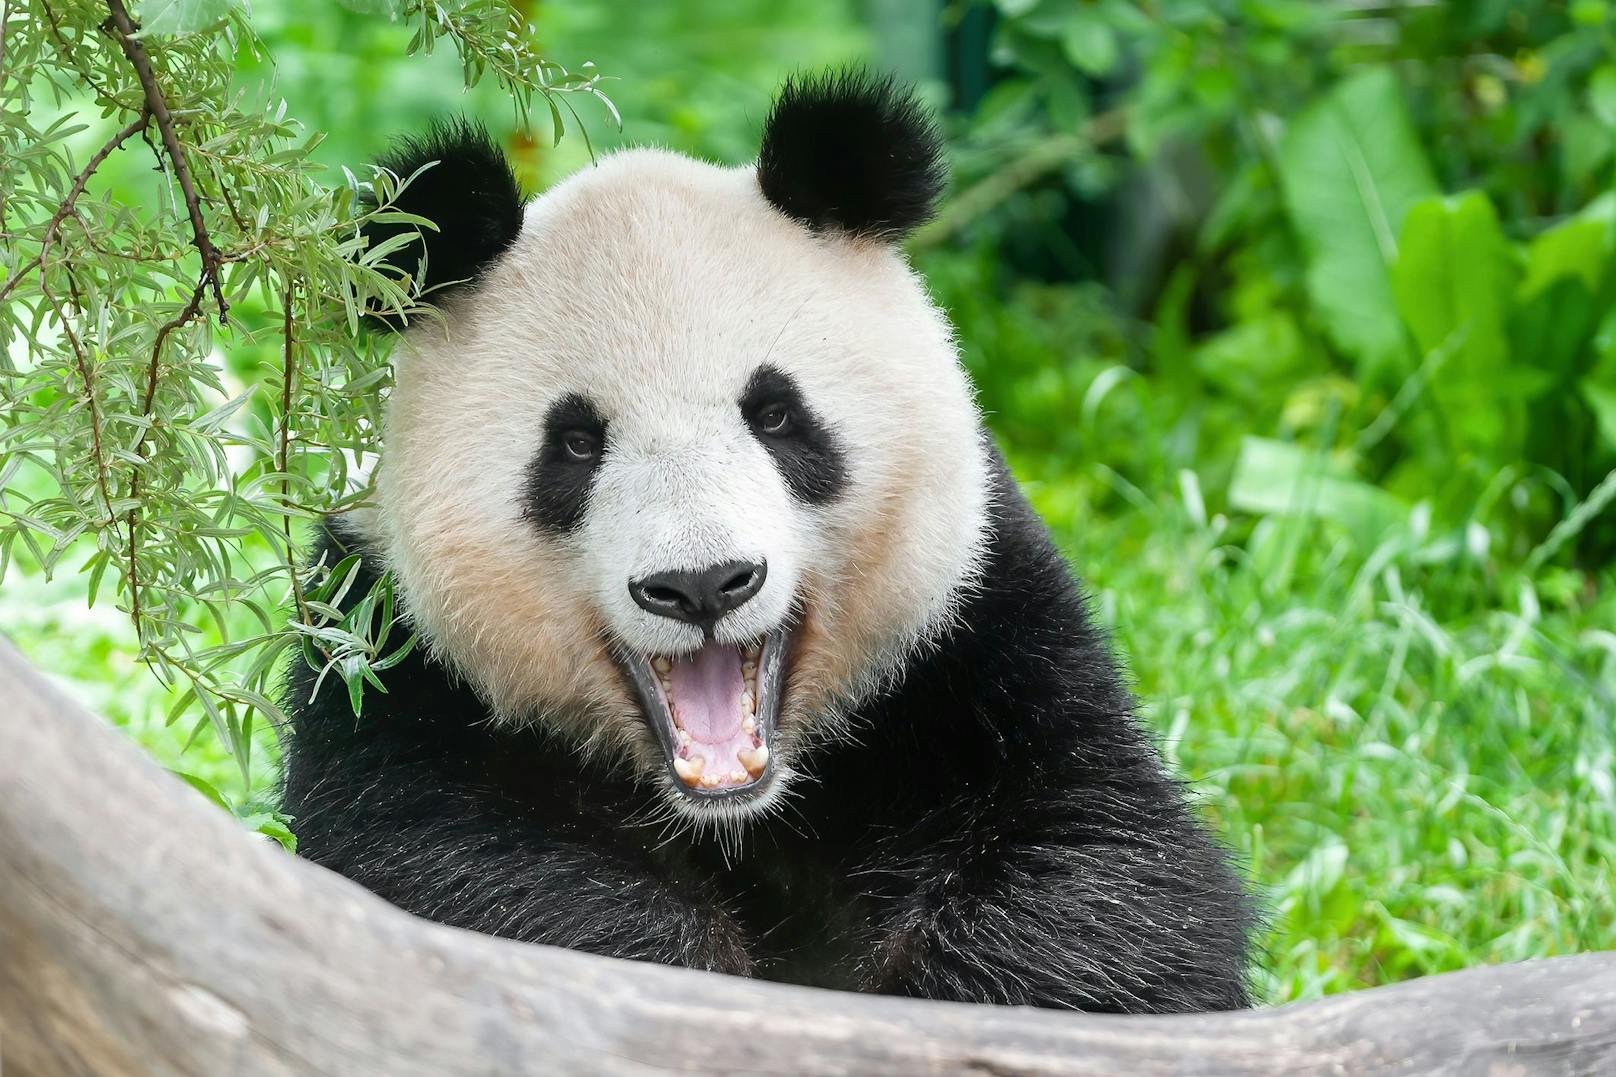 Wie ein Lächeln wirkt das Gähnen von Pandas und dauert durchschnittlich 4,28 Sekunden.